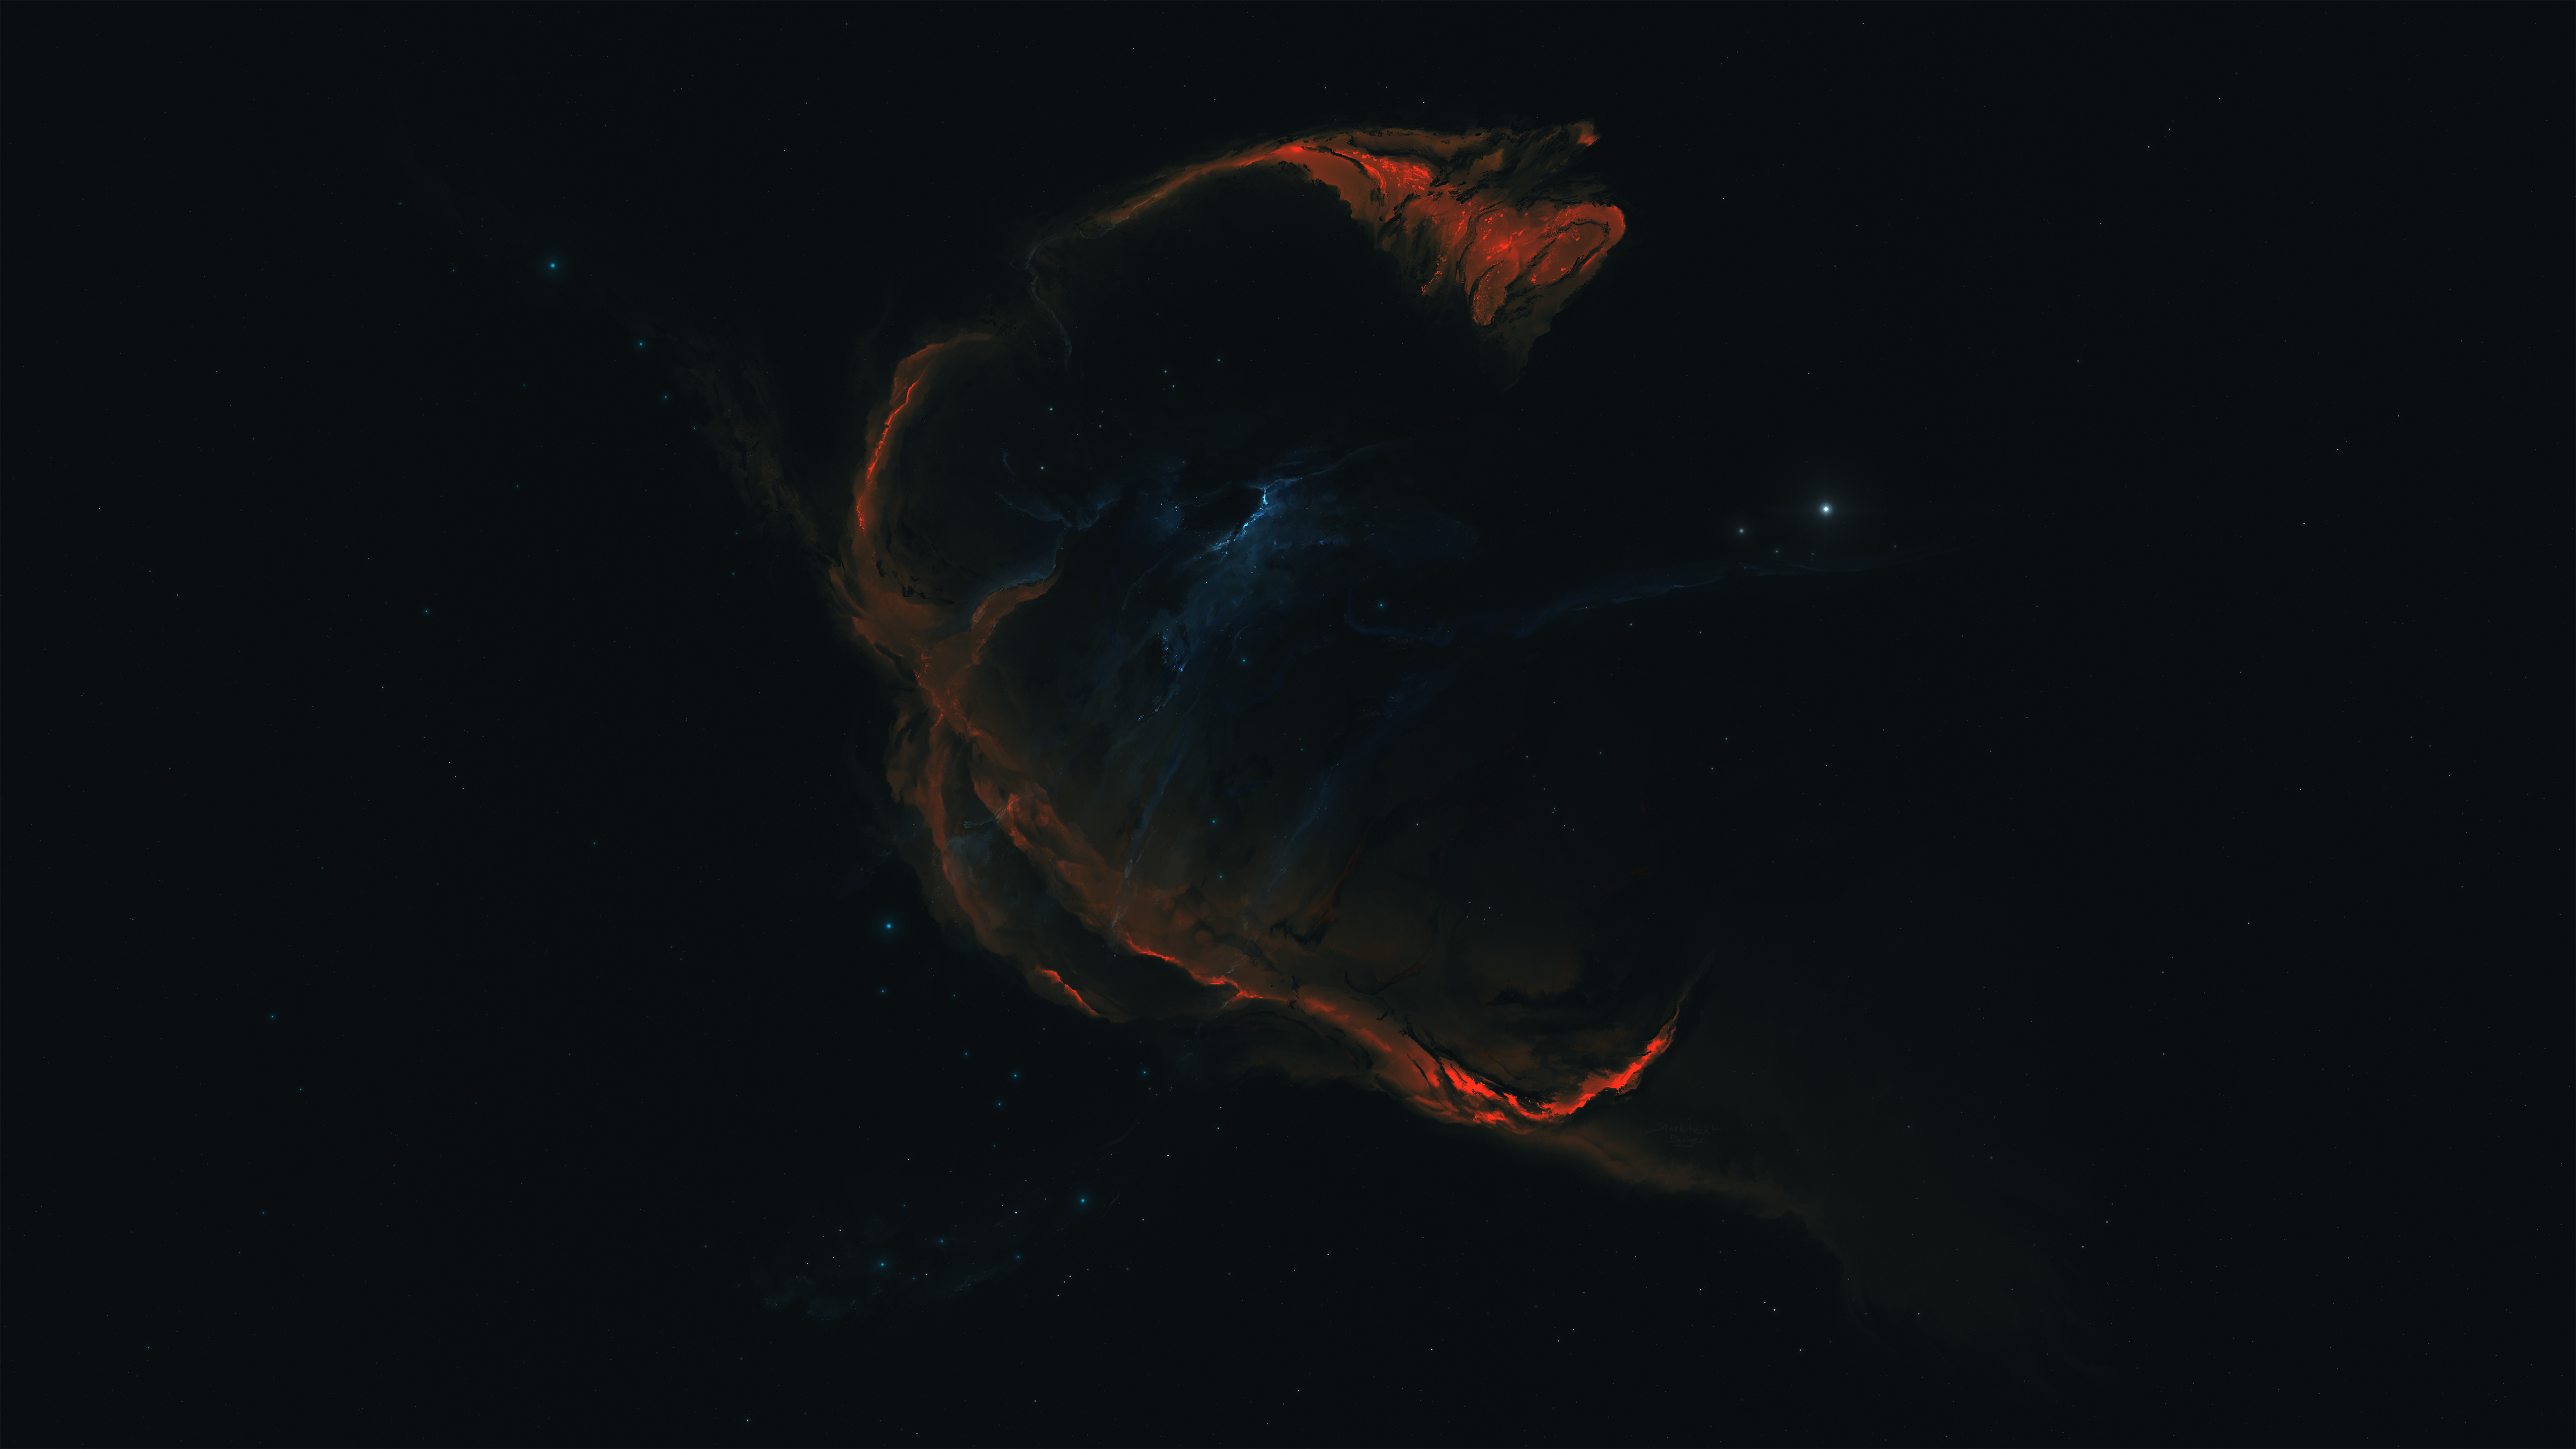 General 5120x2880 Starkiteckt nebula dark background